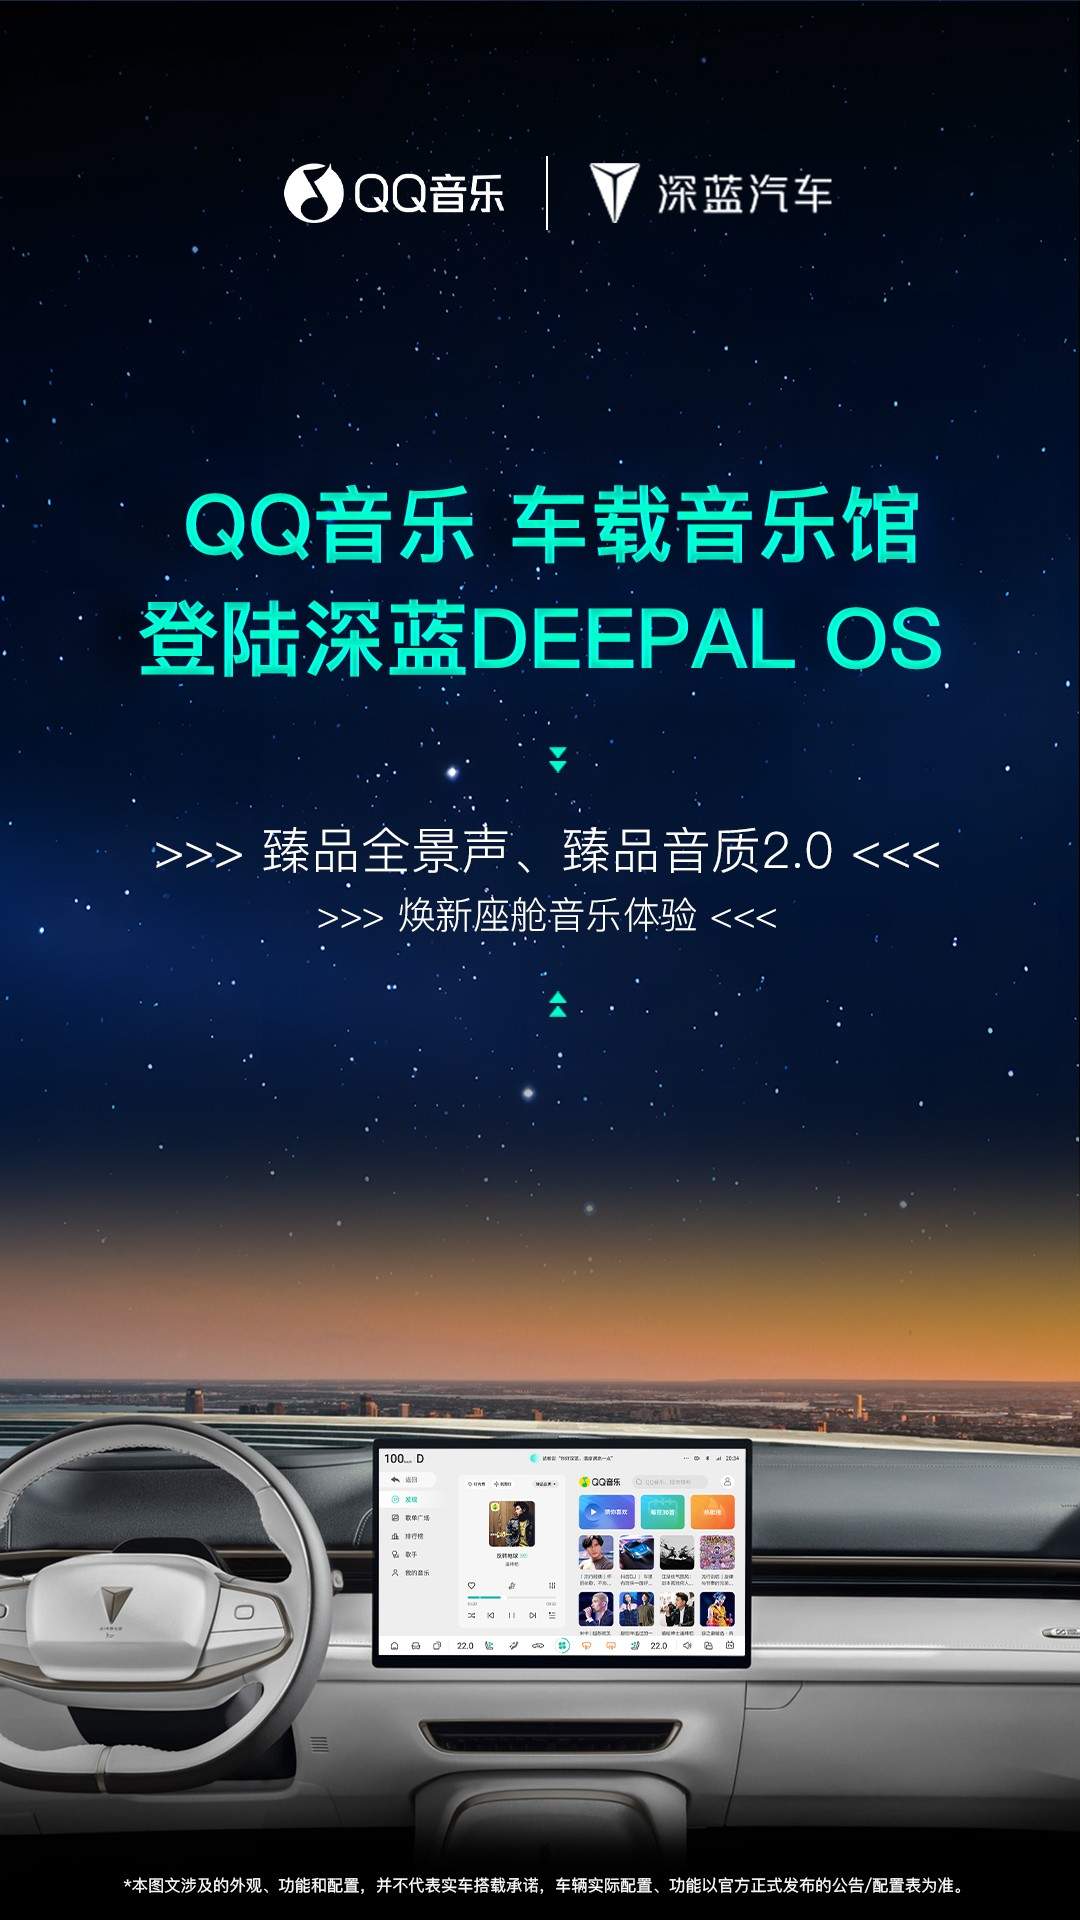 QQ音乐深蓝汽车战略合作达成，四大进阶功能助力车主享受高品质音乐盛宴  第1张